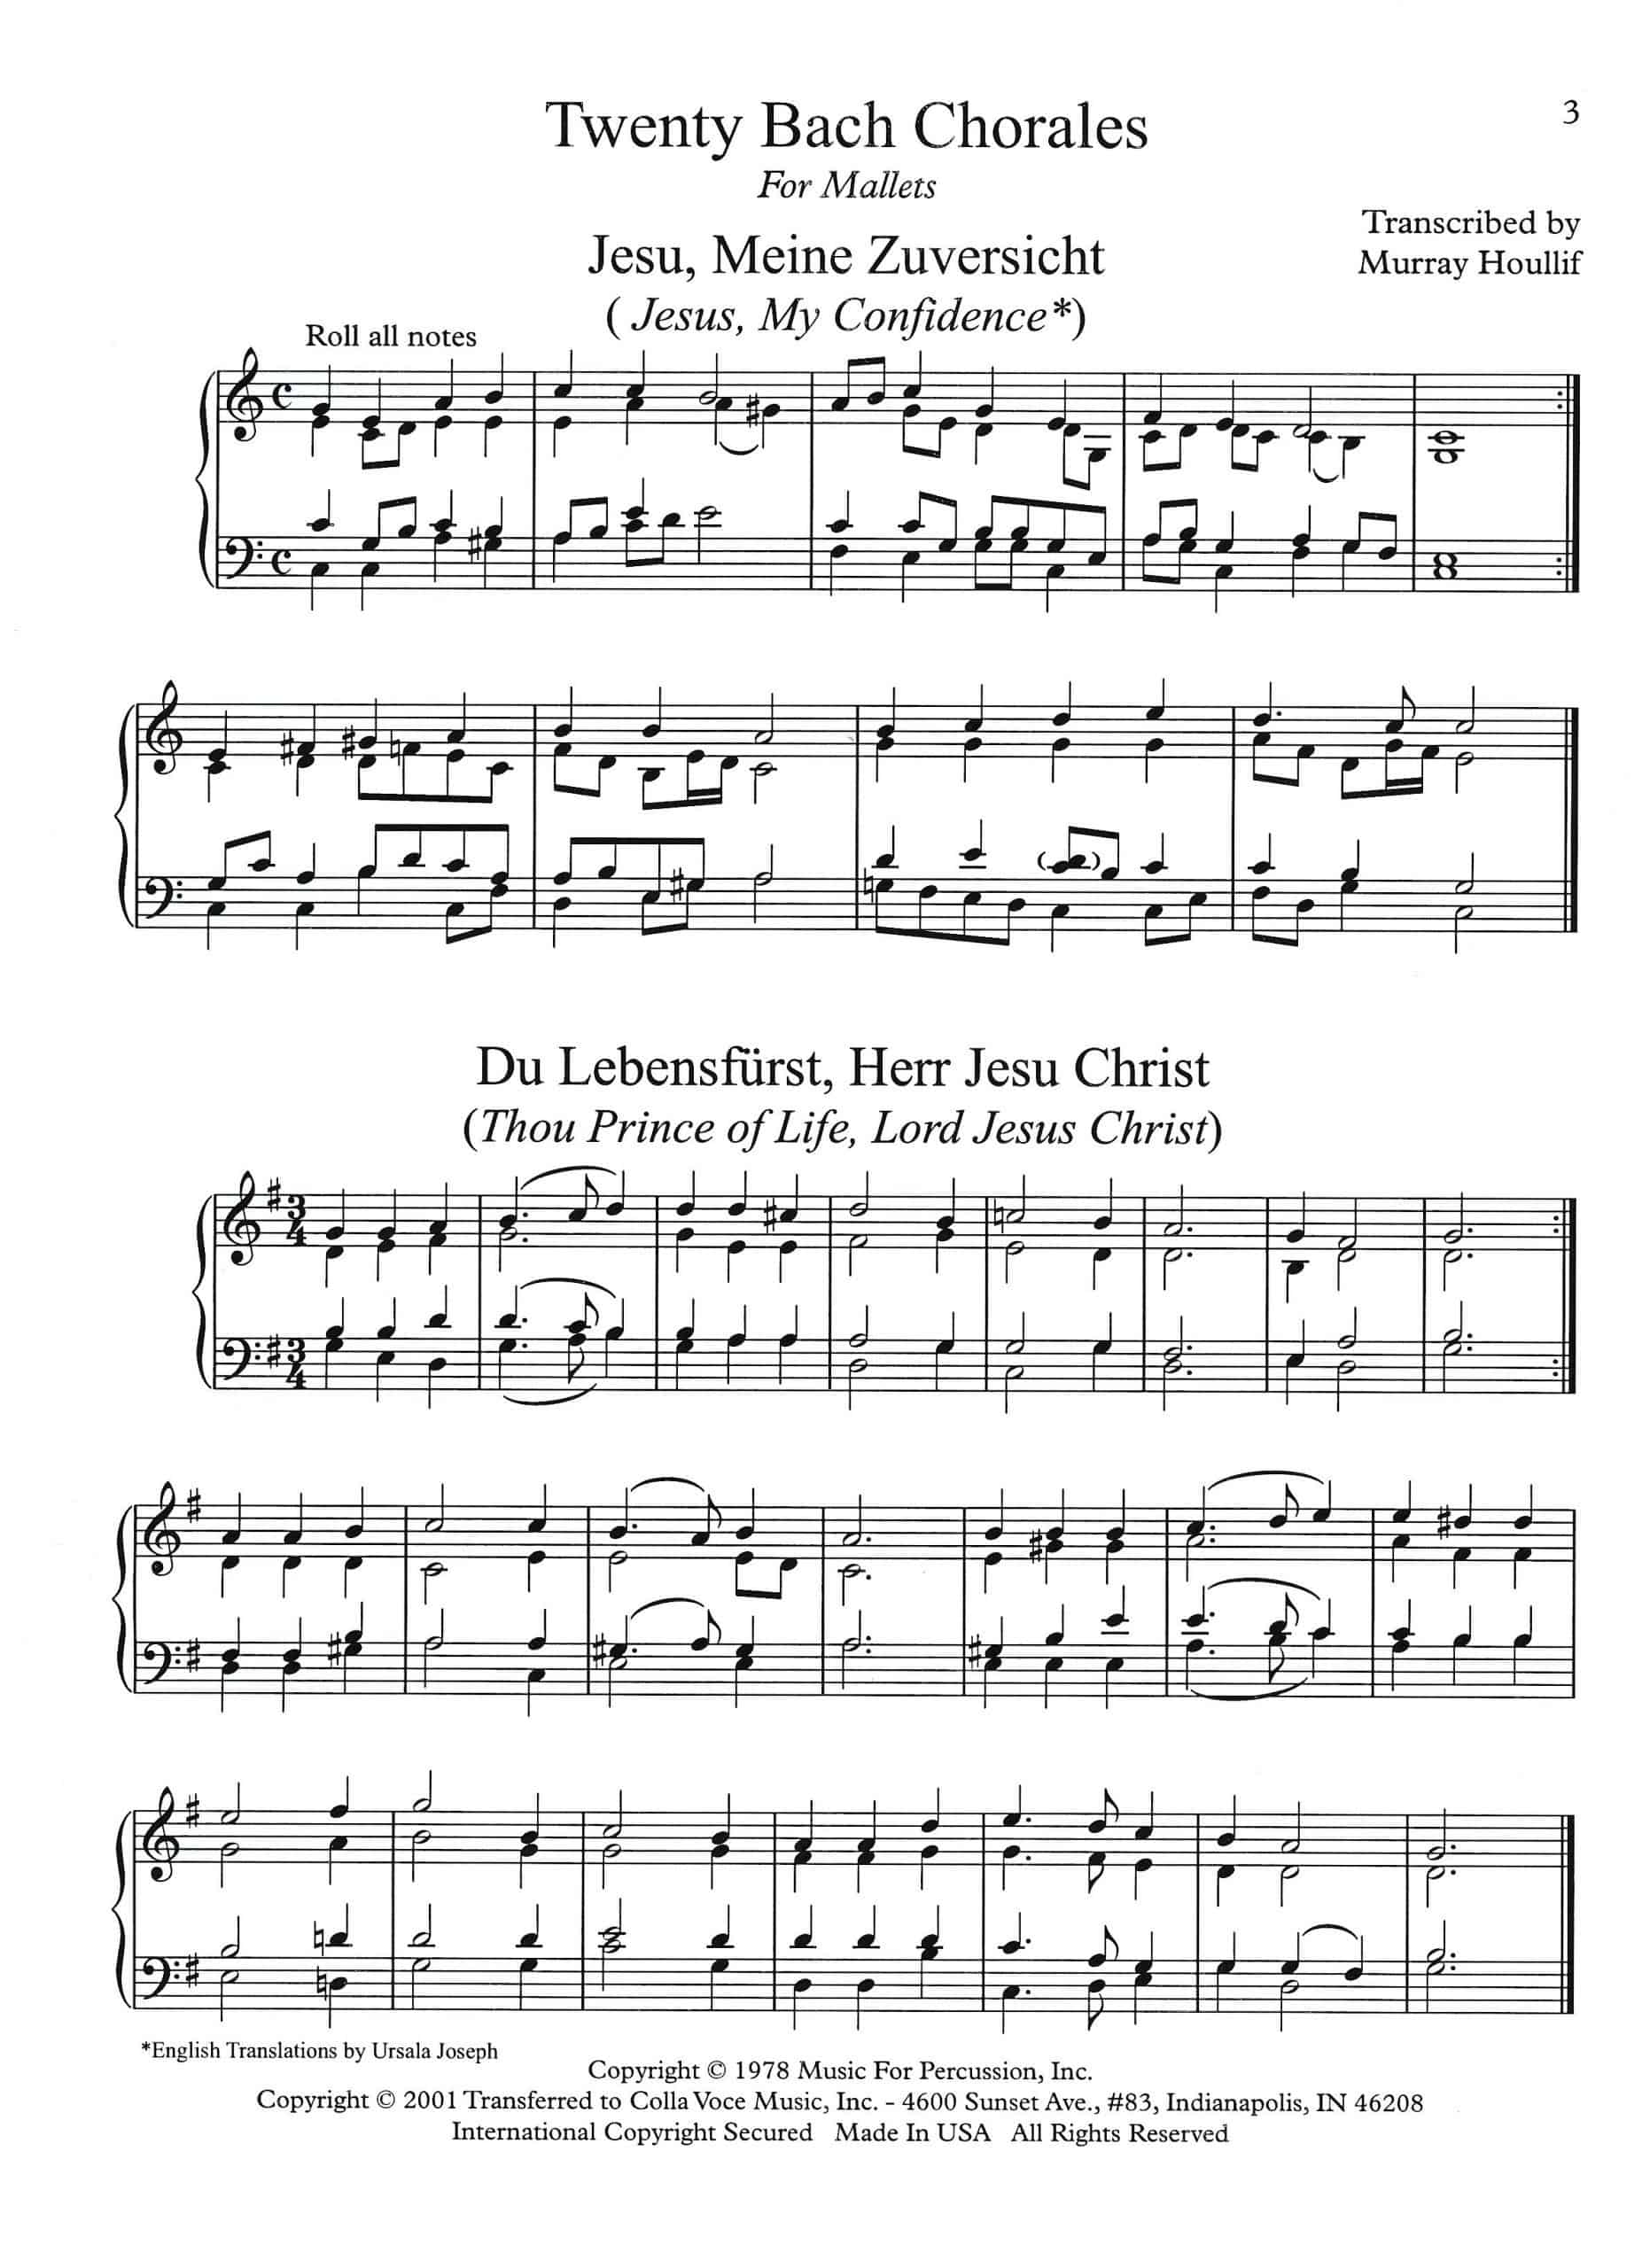 Twenty Bach Chorales by Bach arr. Murray Houllif